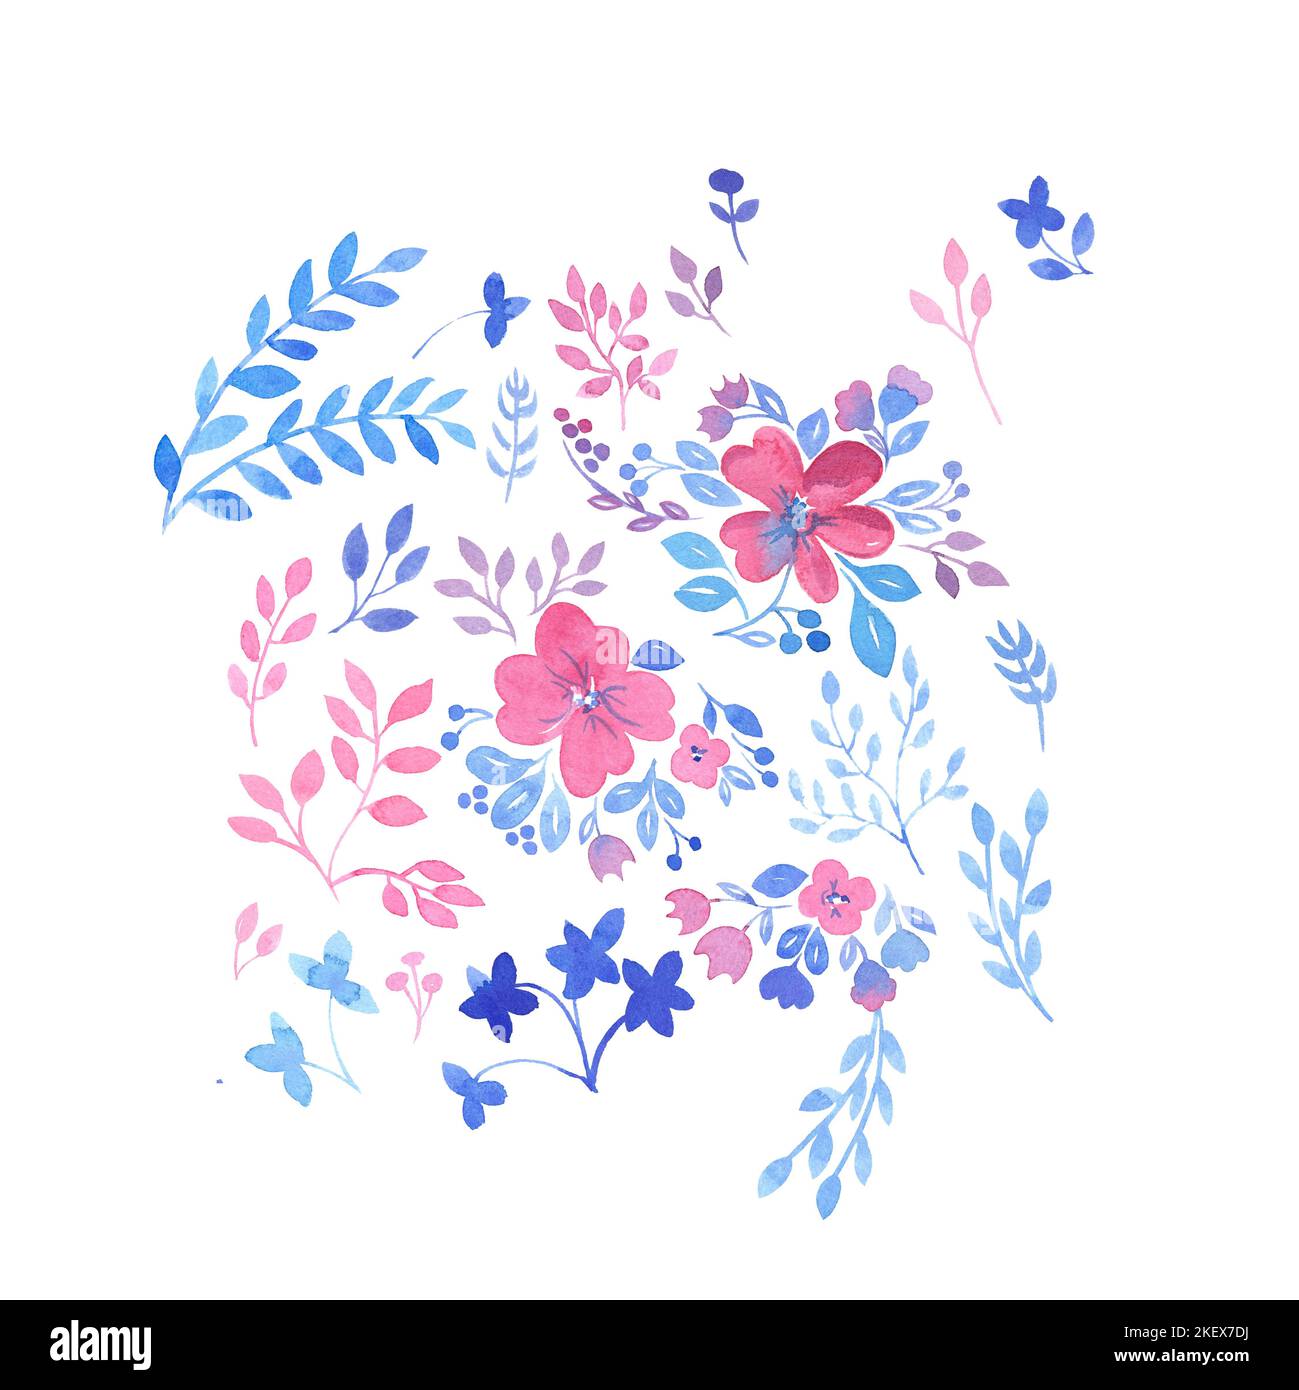 Acquerello motivo floreale, carta da parati floreale, fiori selvatici rosa. In stile vintage. Per abiti, tessuti alla moda, arredamento su sfondo bianco Foto Stock